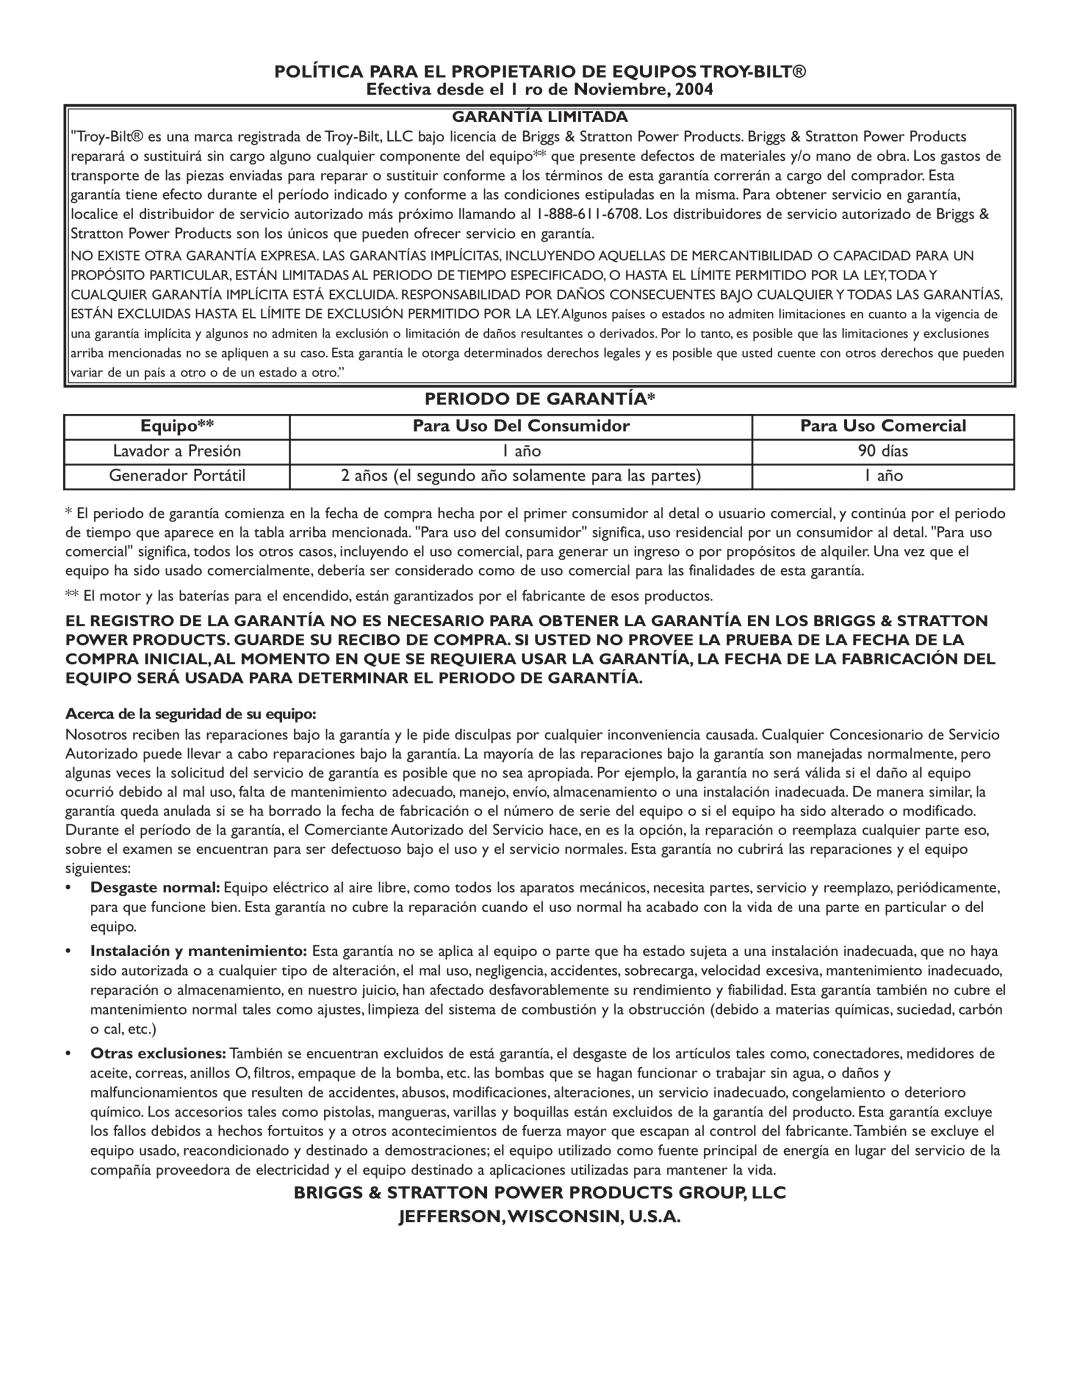 Troy-Bilt 020242-1 owner manual Política Para El Propietario De Equipos Troy-Bilt, Efectiva desde el 1 ro de Noviembre 